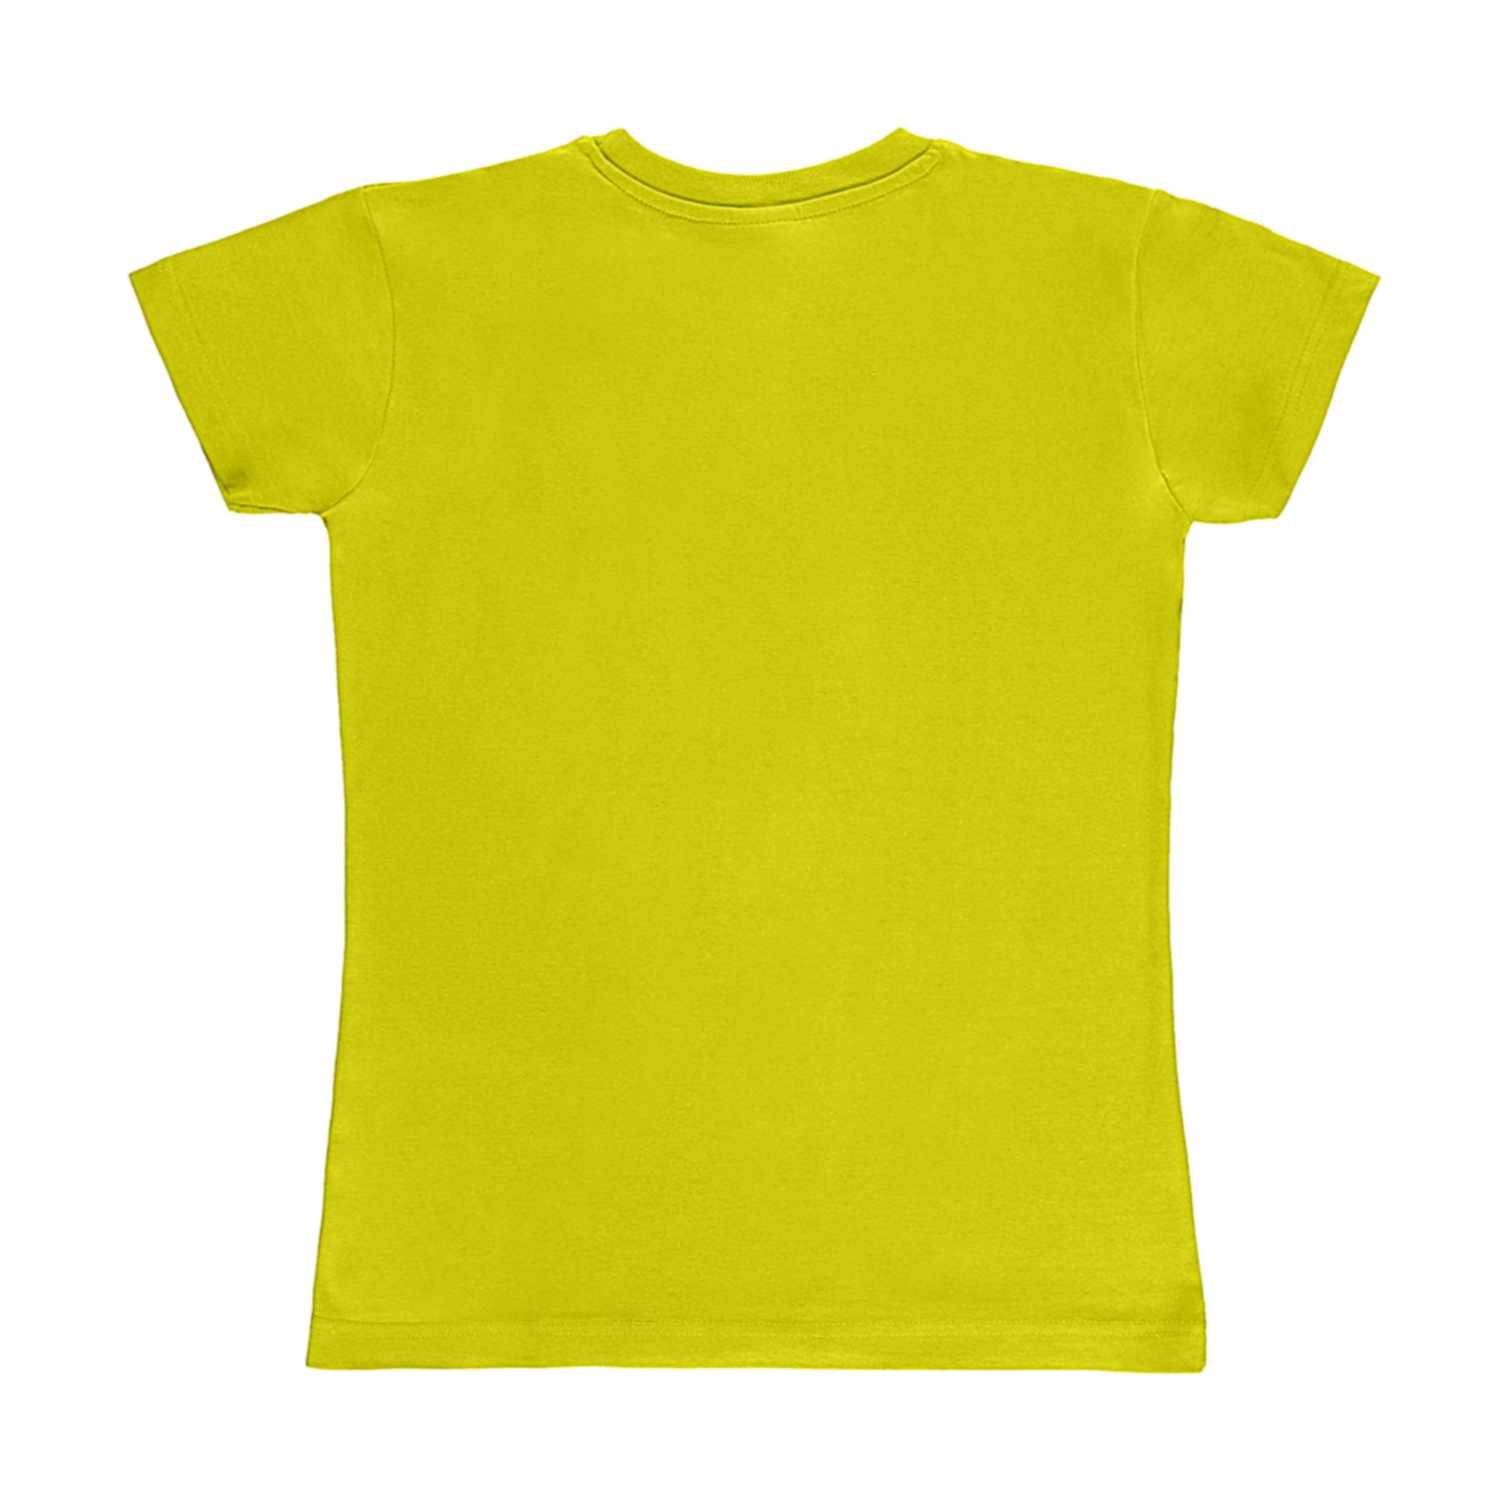 Koszulka damska SG limonkowa XXL